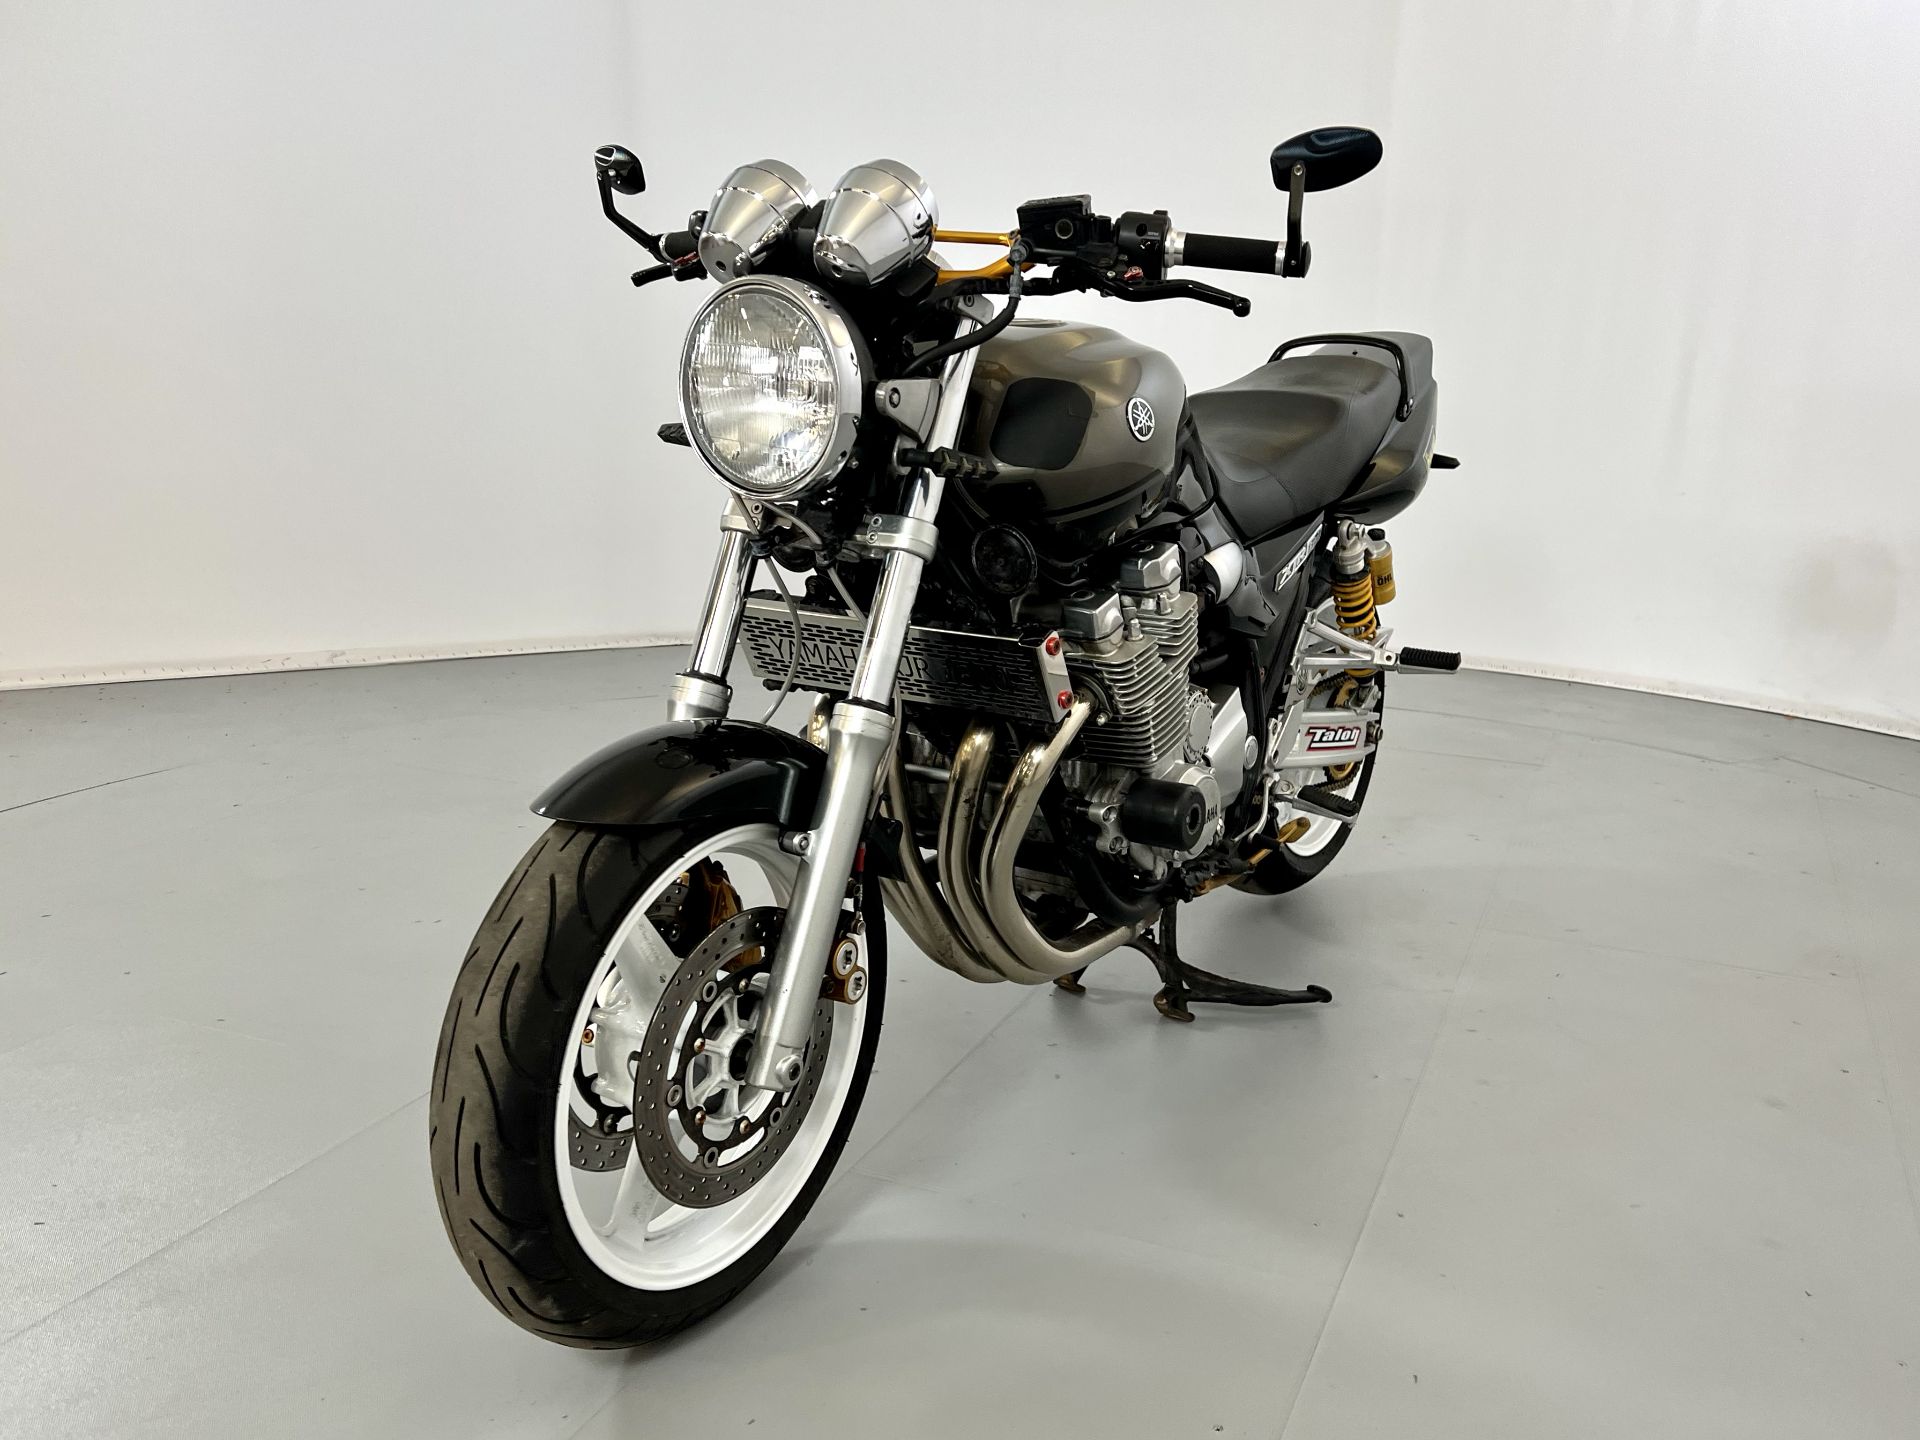 Yamaha XJR 1300 - Image 4 of 11